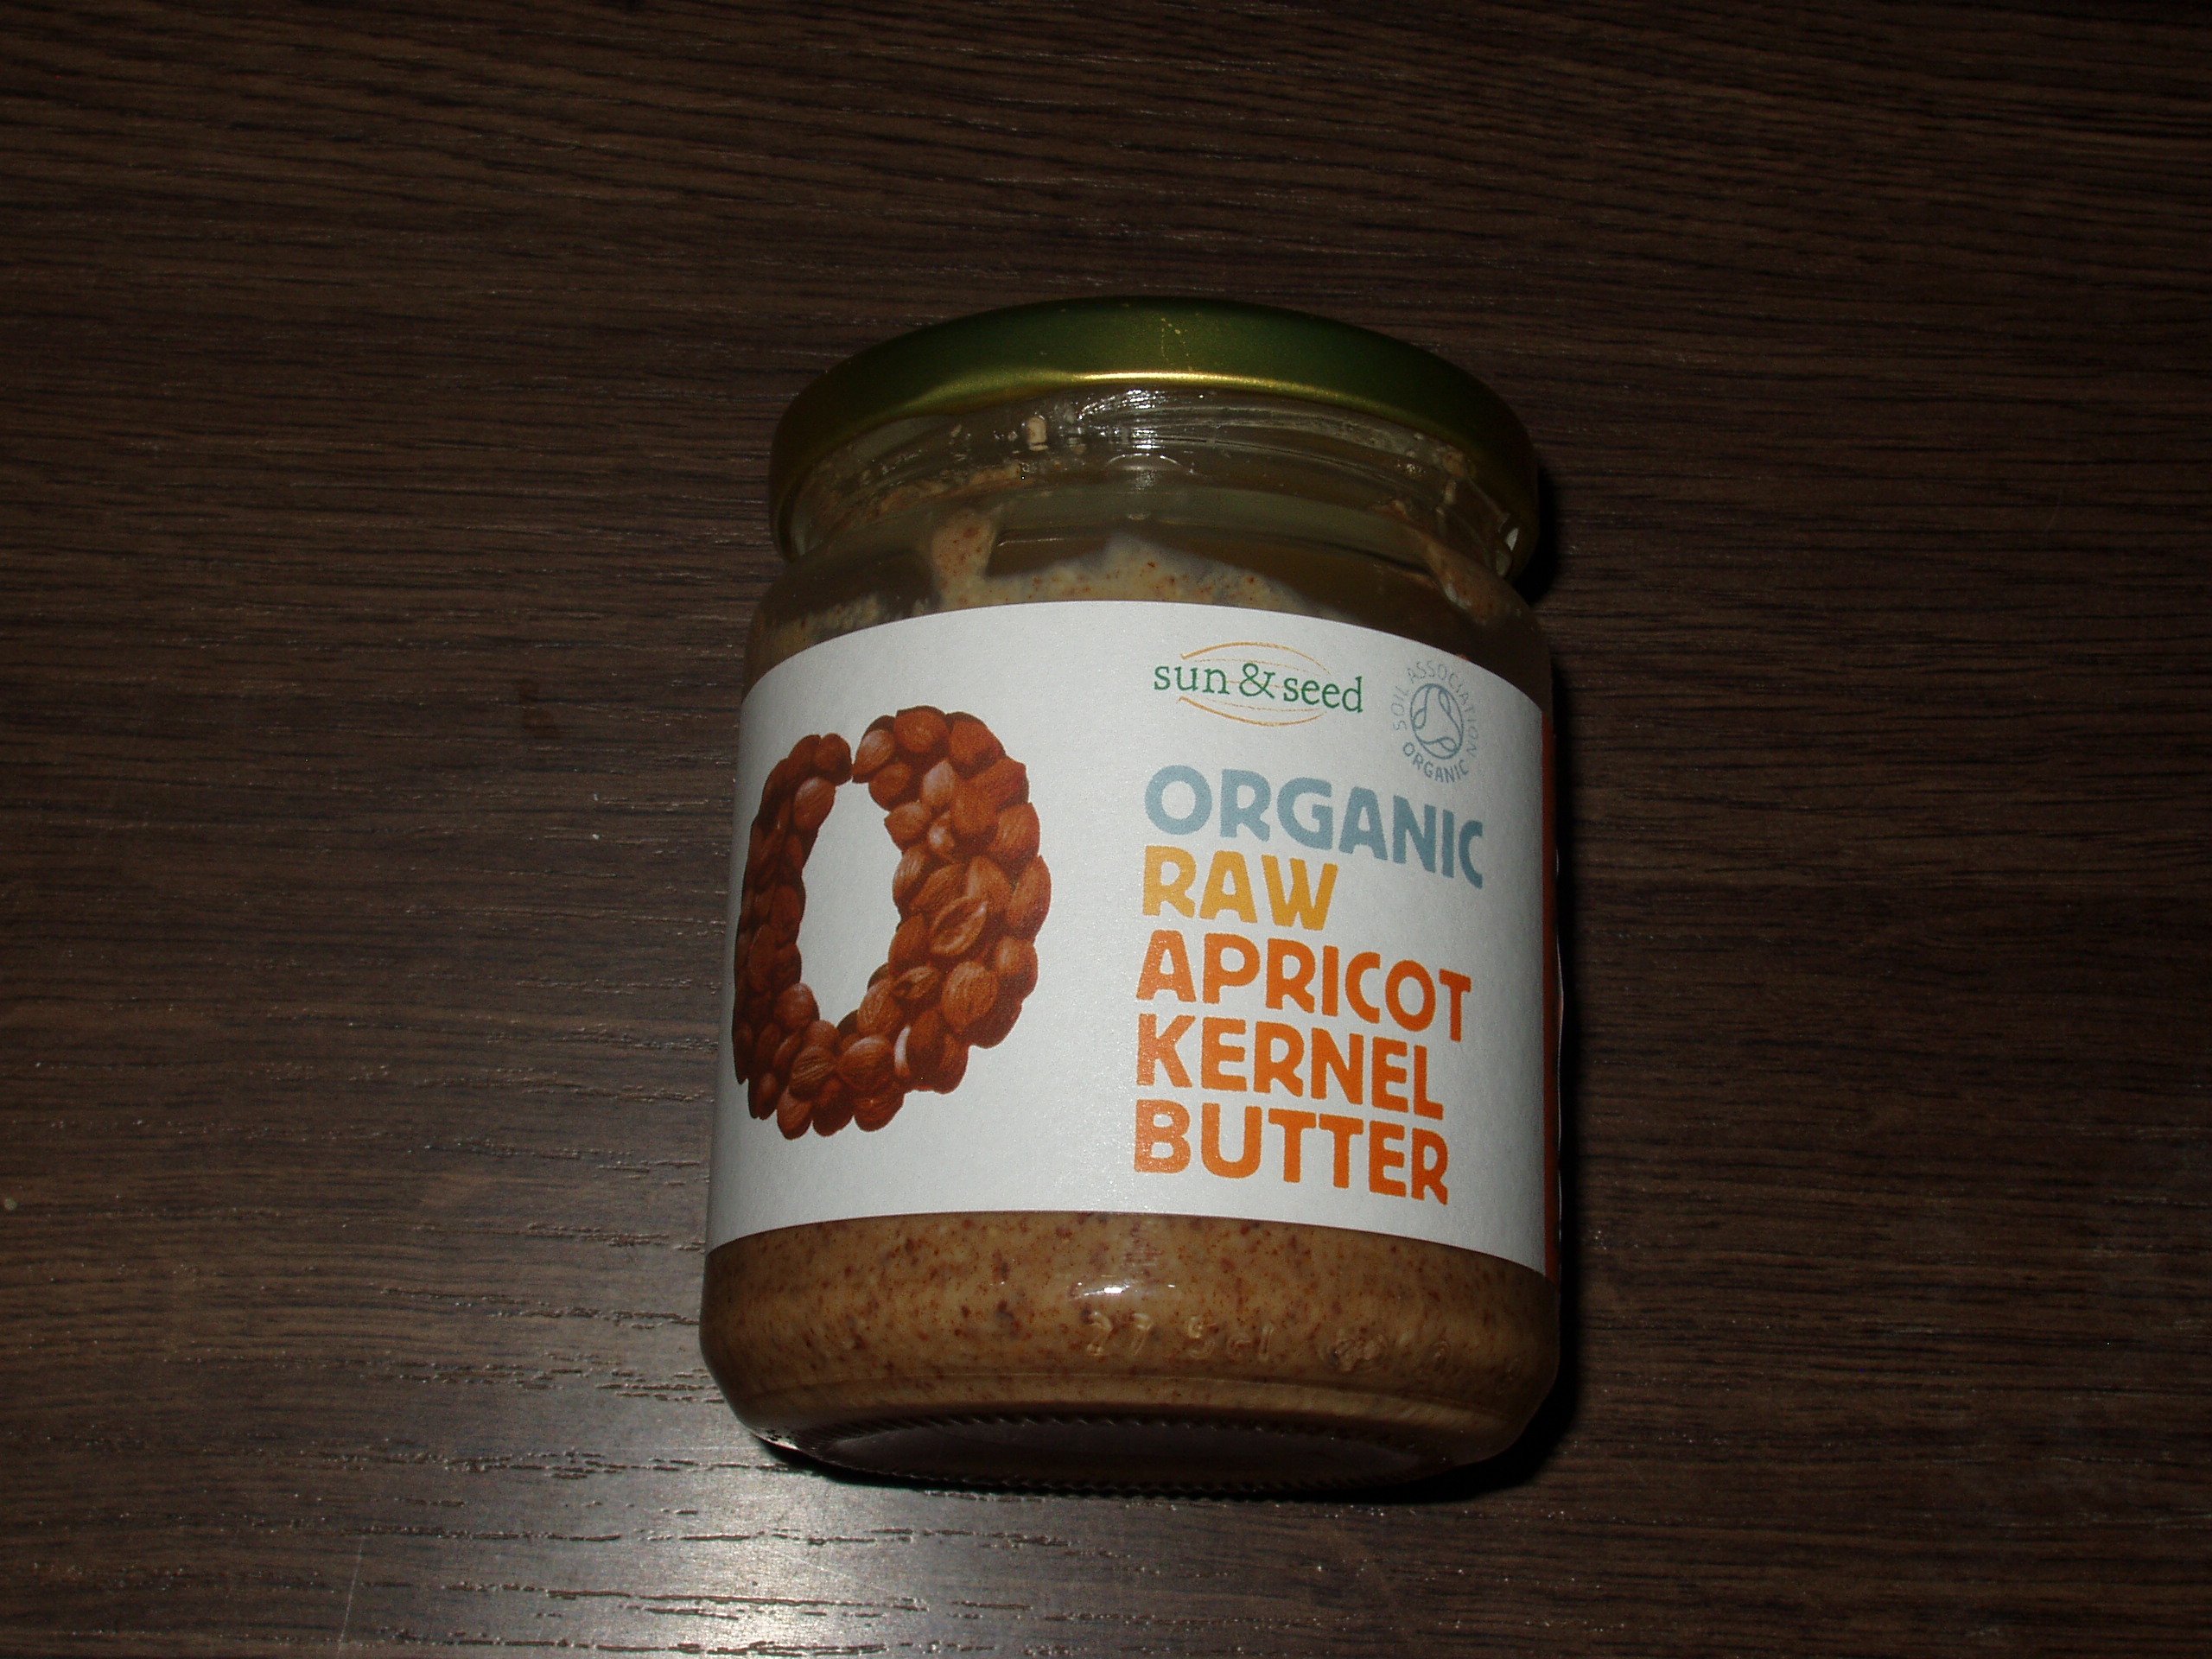 Podrobné informace o potravině Organic Raw Apricot kernel butter